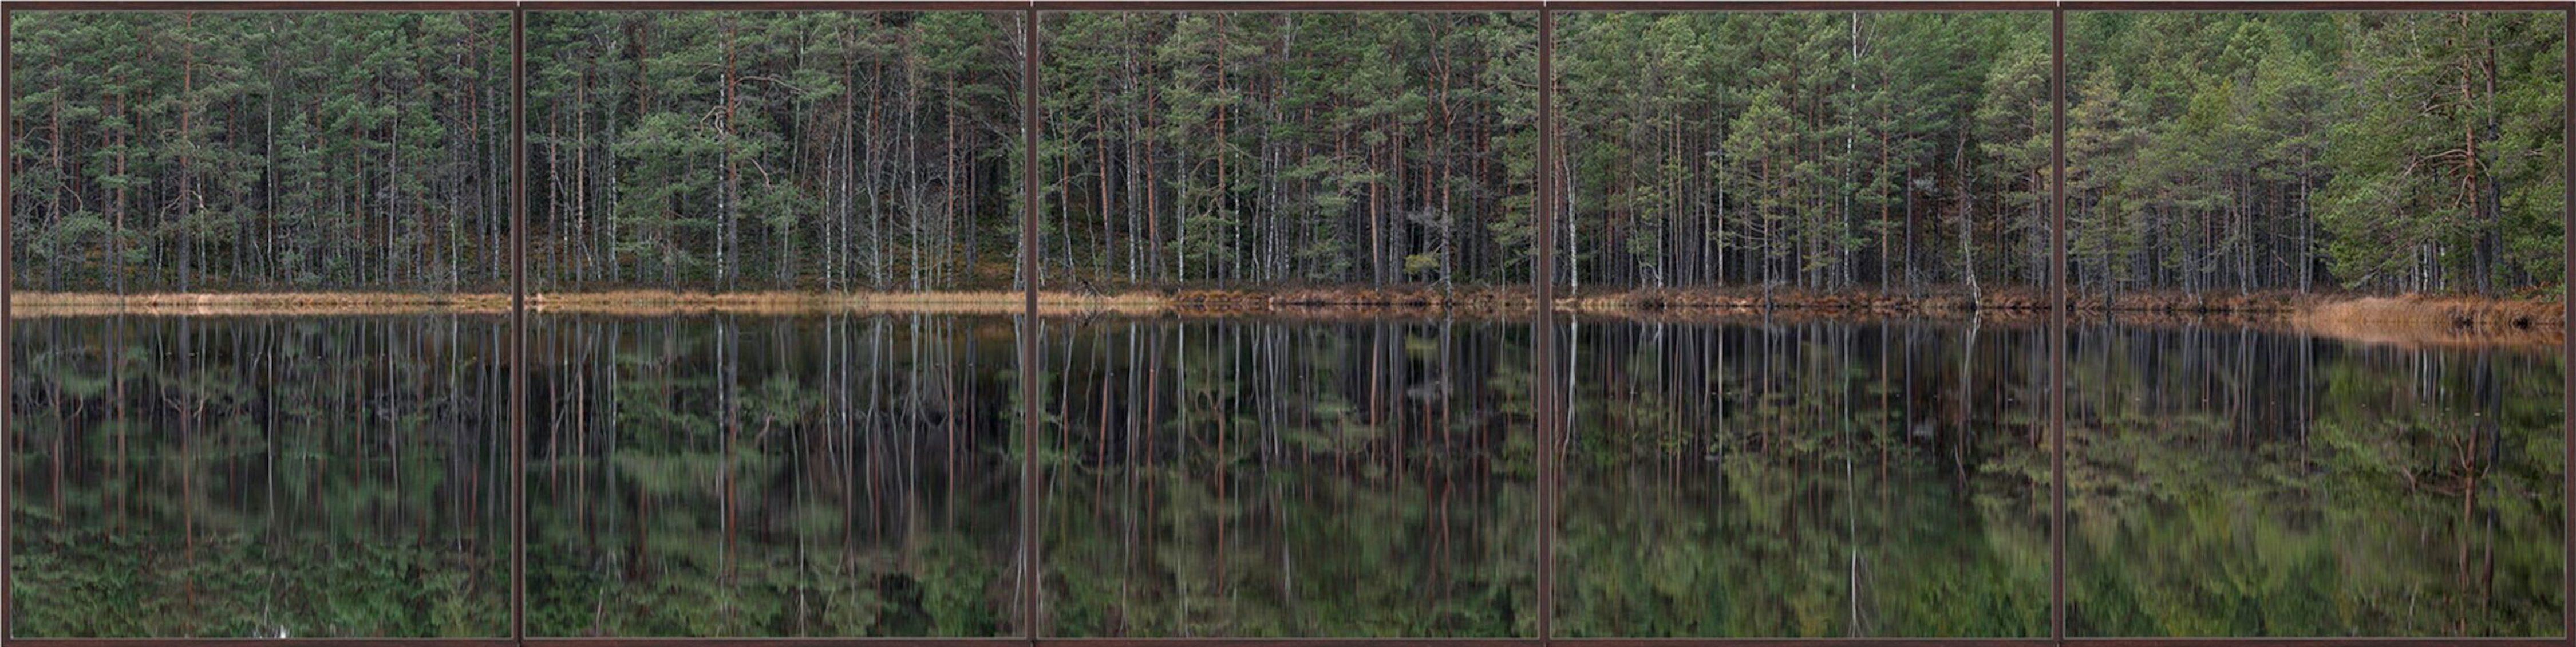 Deep Mirroring Forest 012 ist eine Fotografie des deutschen zeitgenössischen Künstlers Bernhard Lang in limitierter Auflage. 

Dieses Foto wird nur als ungerahmter Abzug verkauft. Sie ist in 5 Größen erhältlich:
*30 × 120 cm (11,8 × 47,2 in),